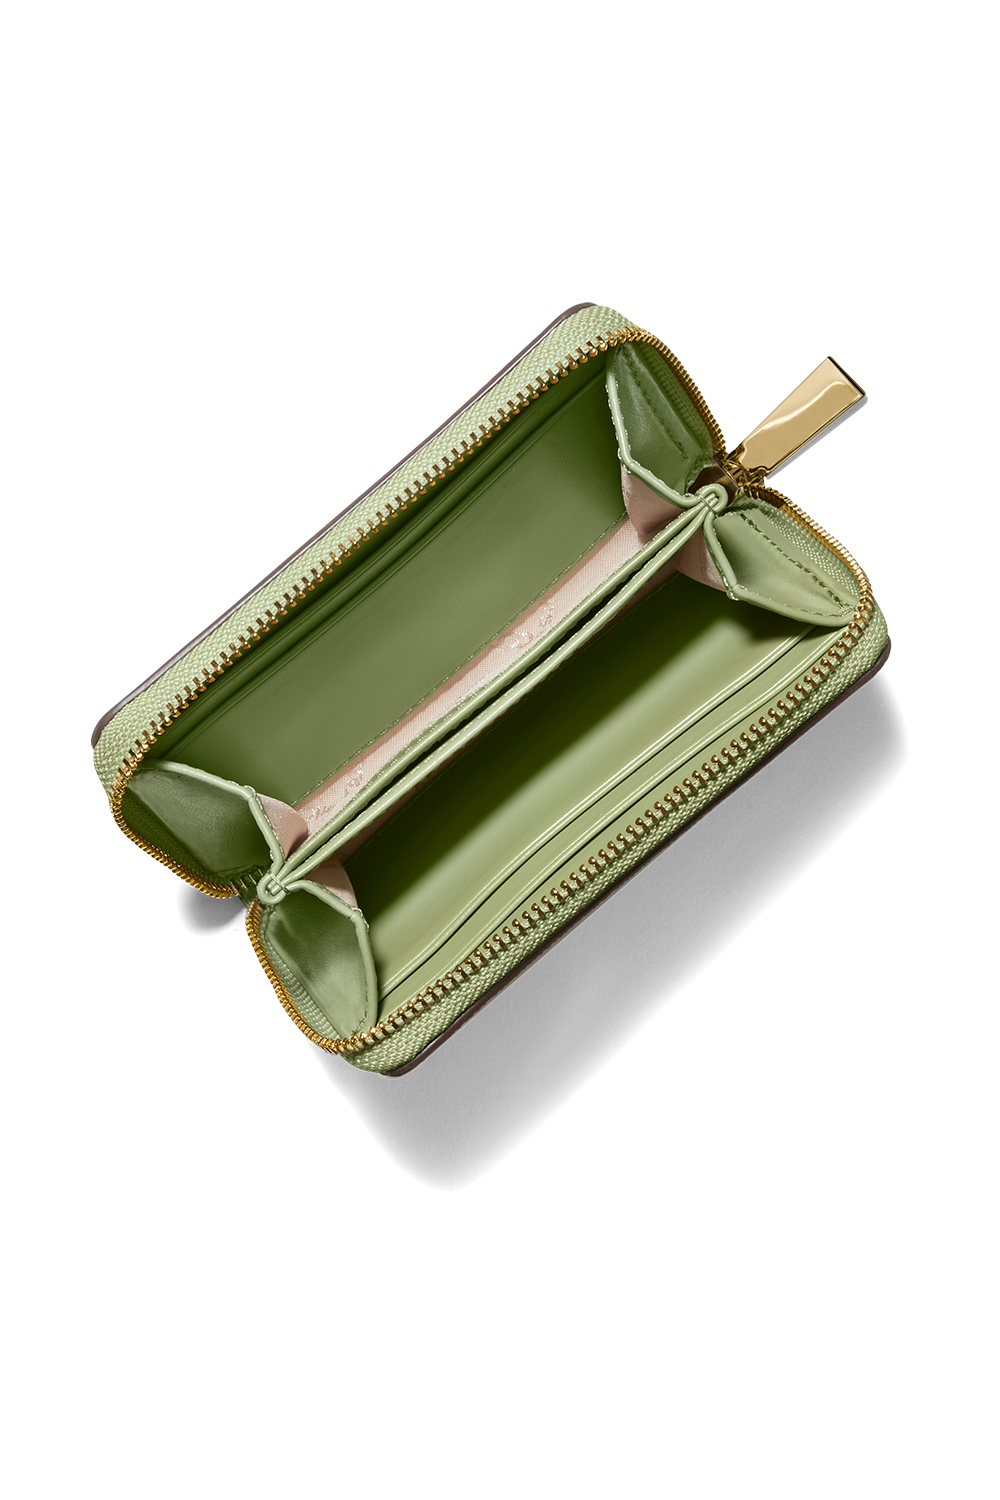 תיק צד מיני מעור בגוון ירוק עדין עם אבזם לוגו זהב MICHAEL KORS